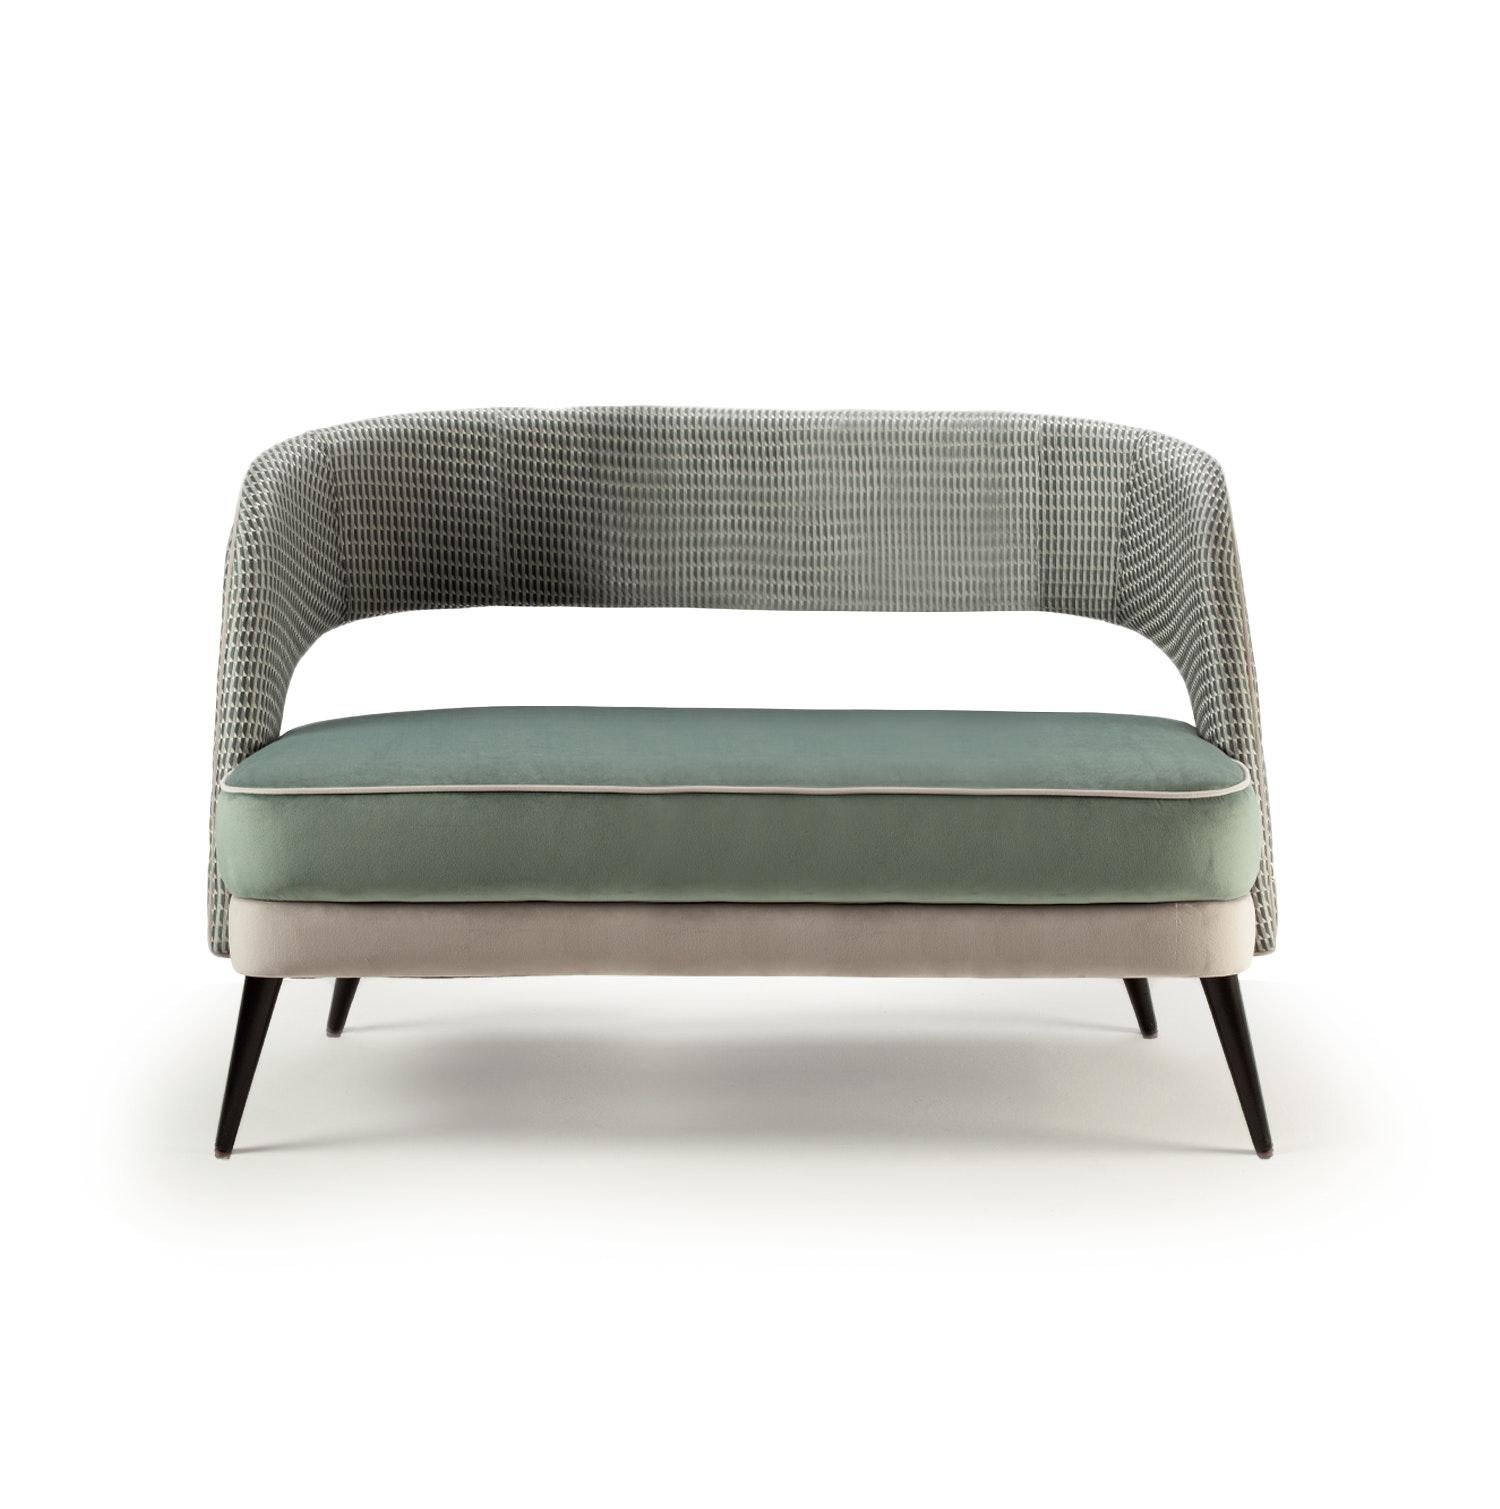 Das bequeme und elegante Sofa Ava ist ein vielseitiges Möbelstück, bei dem der Kreativität keine Grenzen gesetzt sind: Stoffe, Massivhölzer, Lacke und Messingbeschläge werden auf vielfältige Weise ausgewählt und kombiniert, um die perfekte